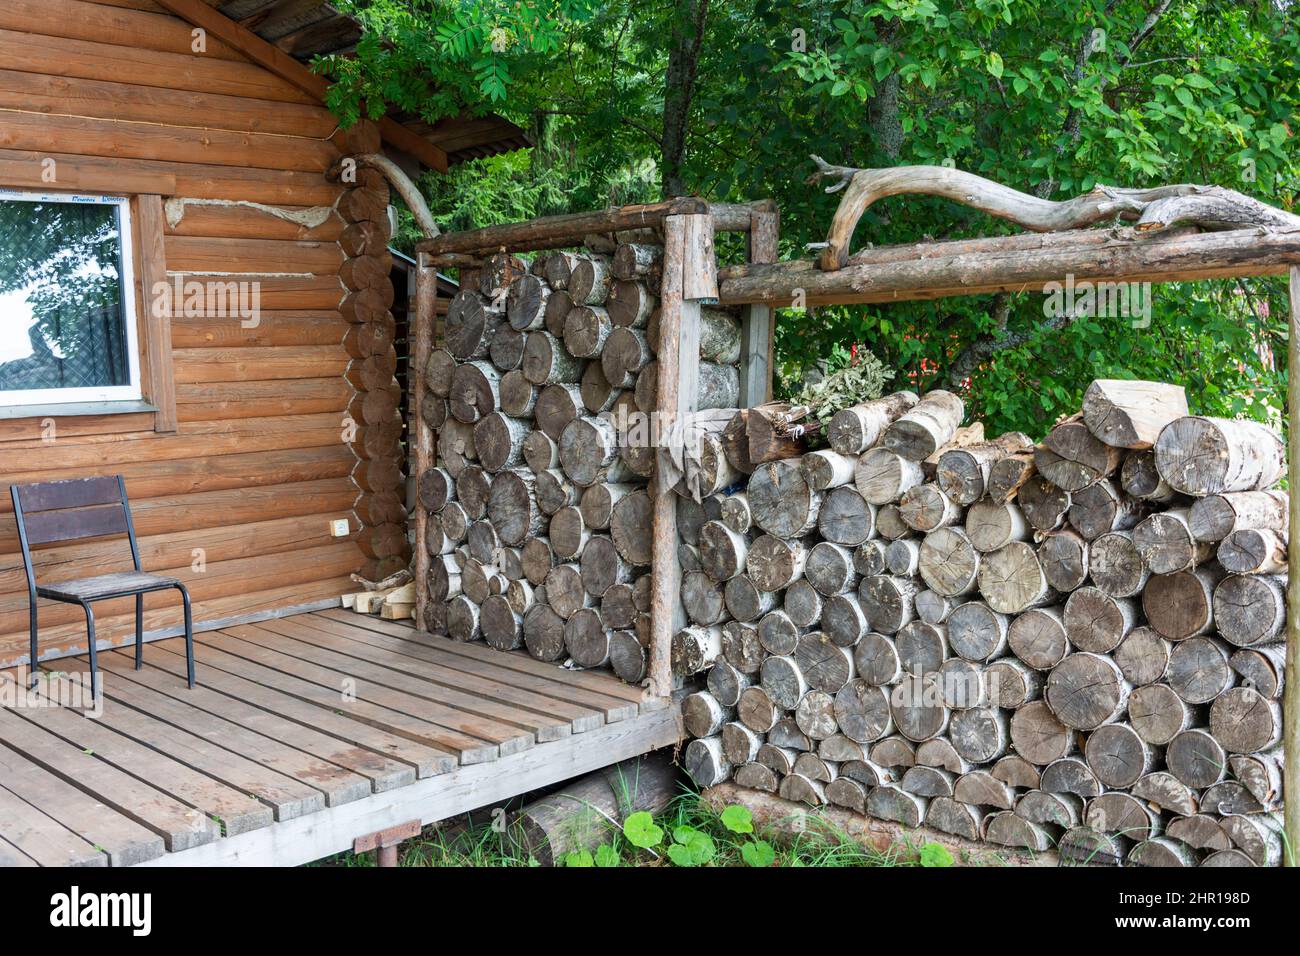 Legna da ardere per la stufa sauna, saune sono impilati accanto al bagno in legno rurale. Per un design di stile di vita. C'è una fila di legna da ardere contro il muro. RUR Foto Stock